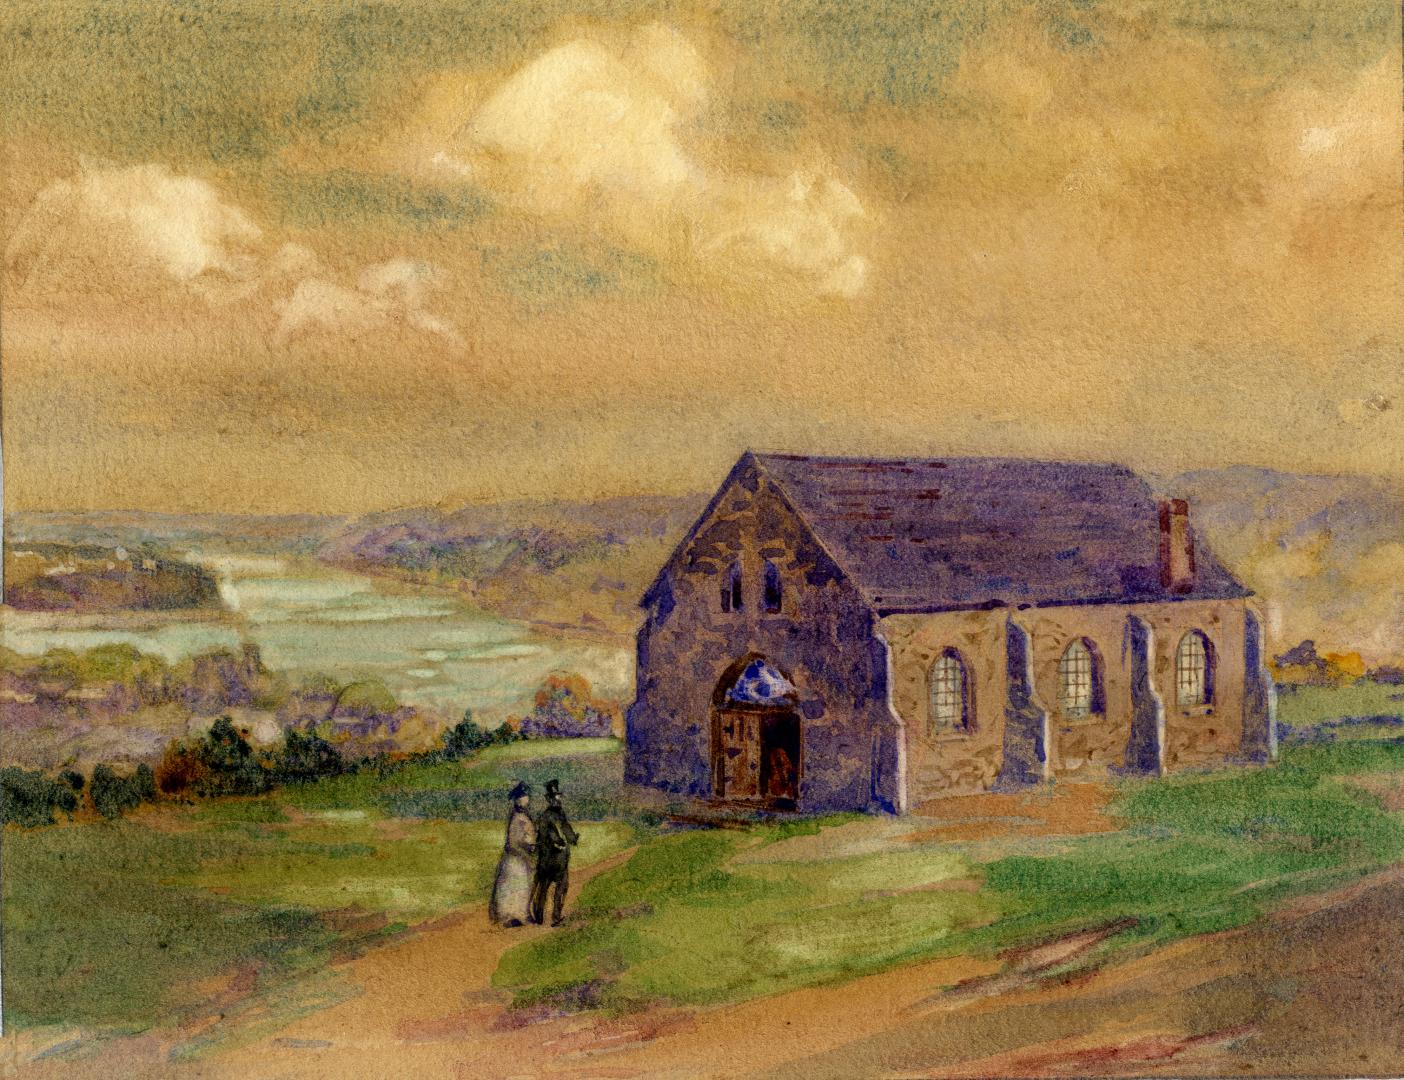 The Anglican Church at Queenston (Niagara-on-the-Lake, Ontario), circa 1830